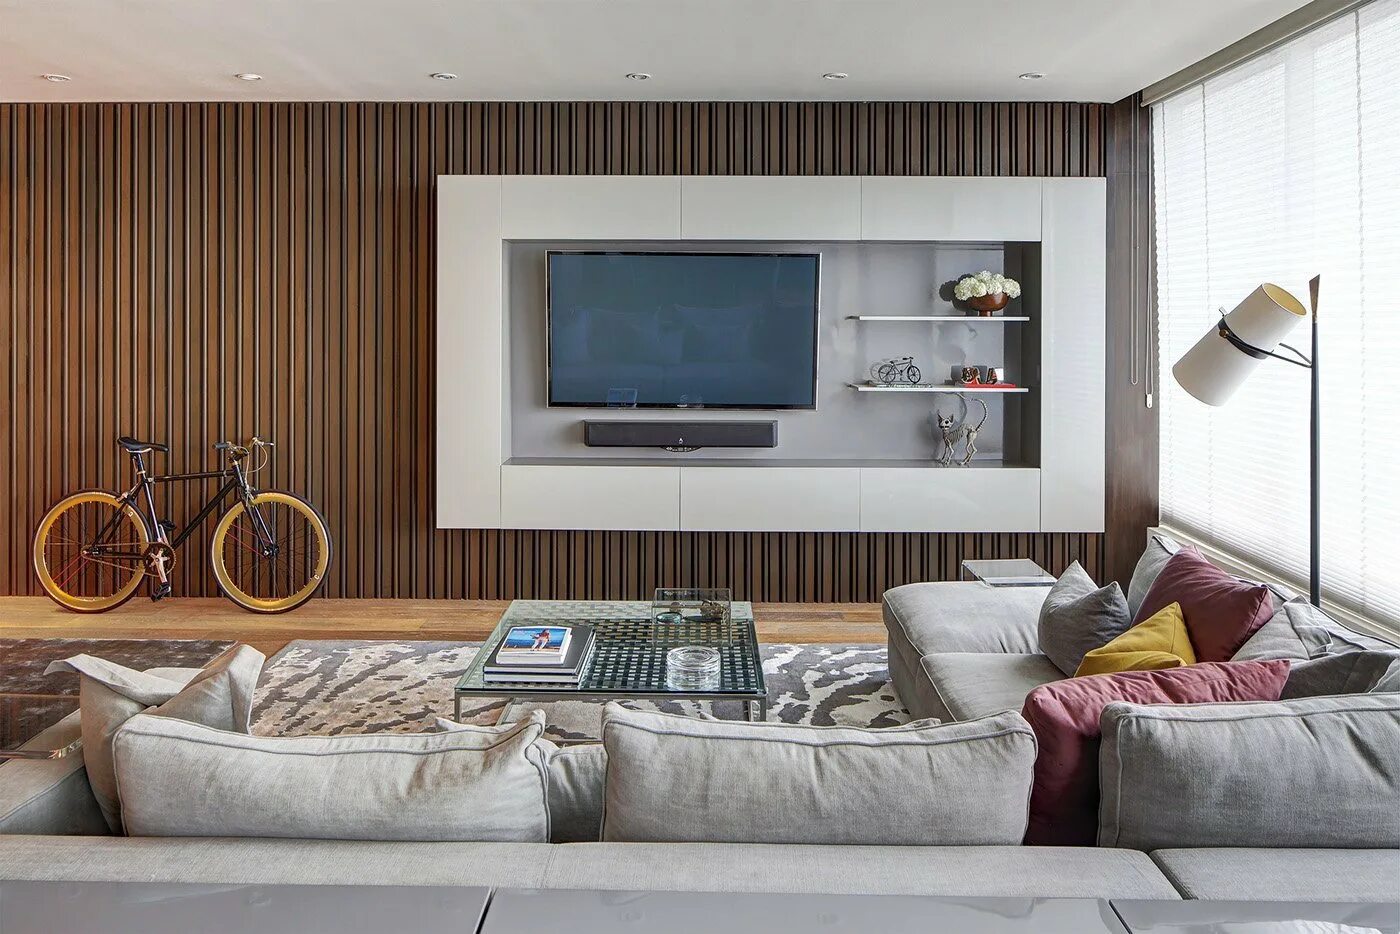 Телевизор в интерьере гостиной. Телевизор в интерьере. Телевизор на стене в интерьере. Декорирование стены с телевизором. Телевизор на стене в гостиной.